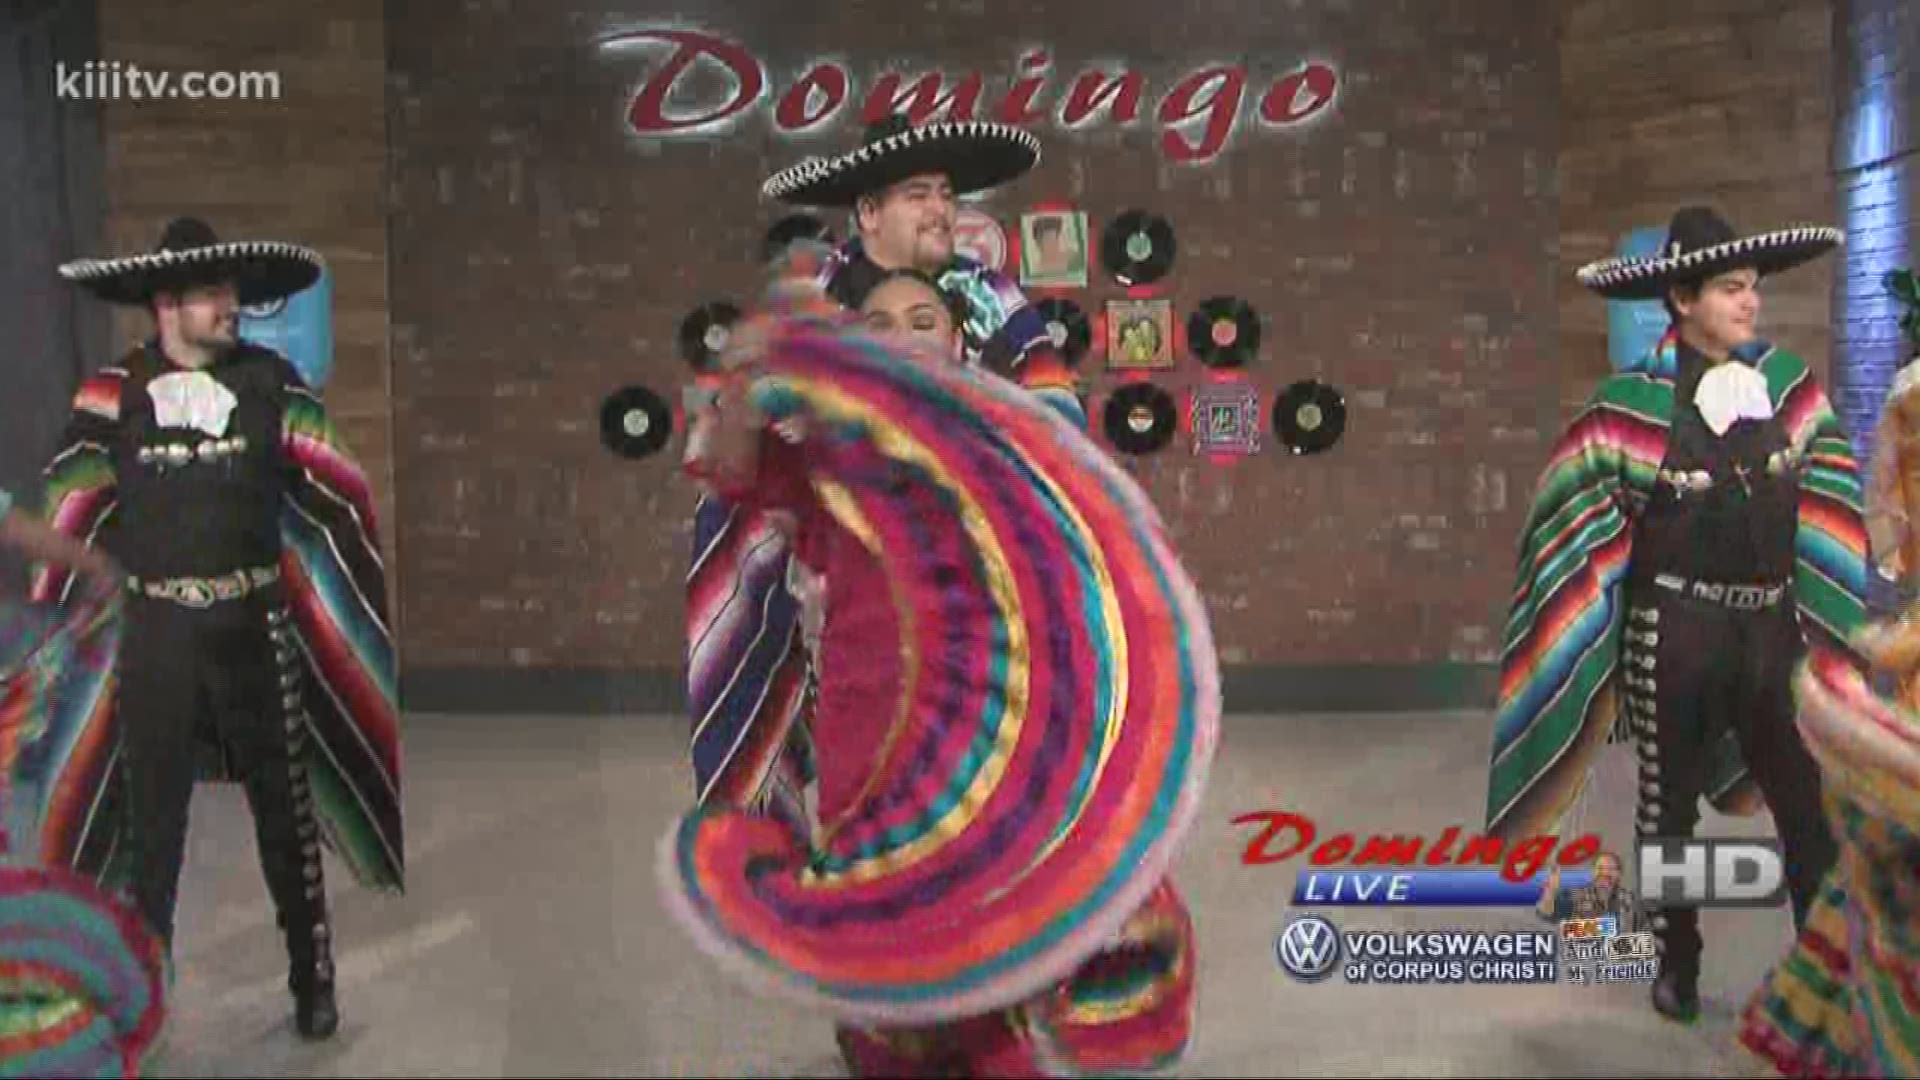 Alcorta's Folklorico performing "El Gavilan" on Domingo Live.